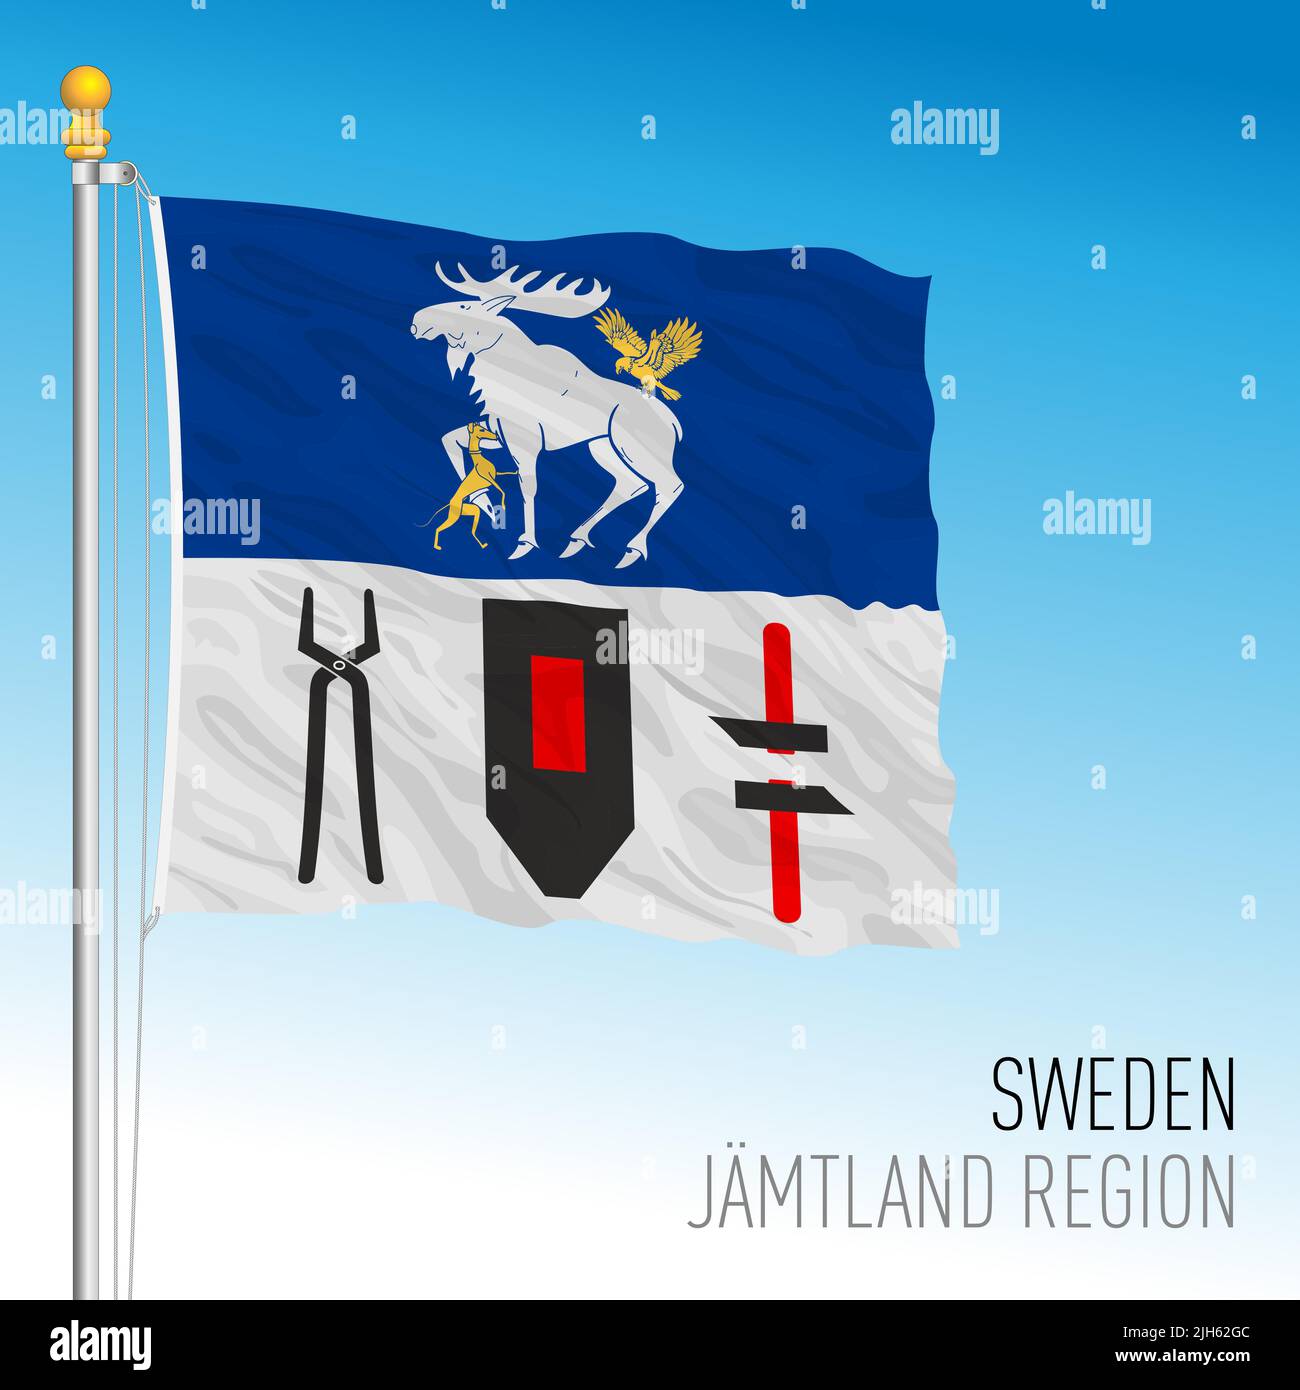 Bandera regional de Jamtland, Reino de Suecia, ilustración de vectores Ilustración del Vector